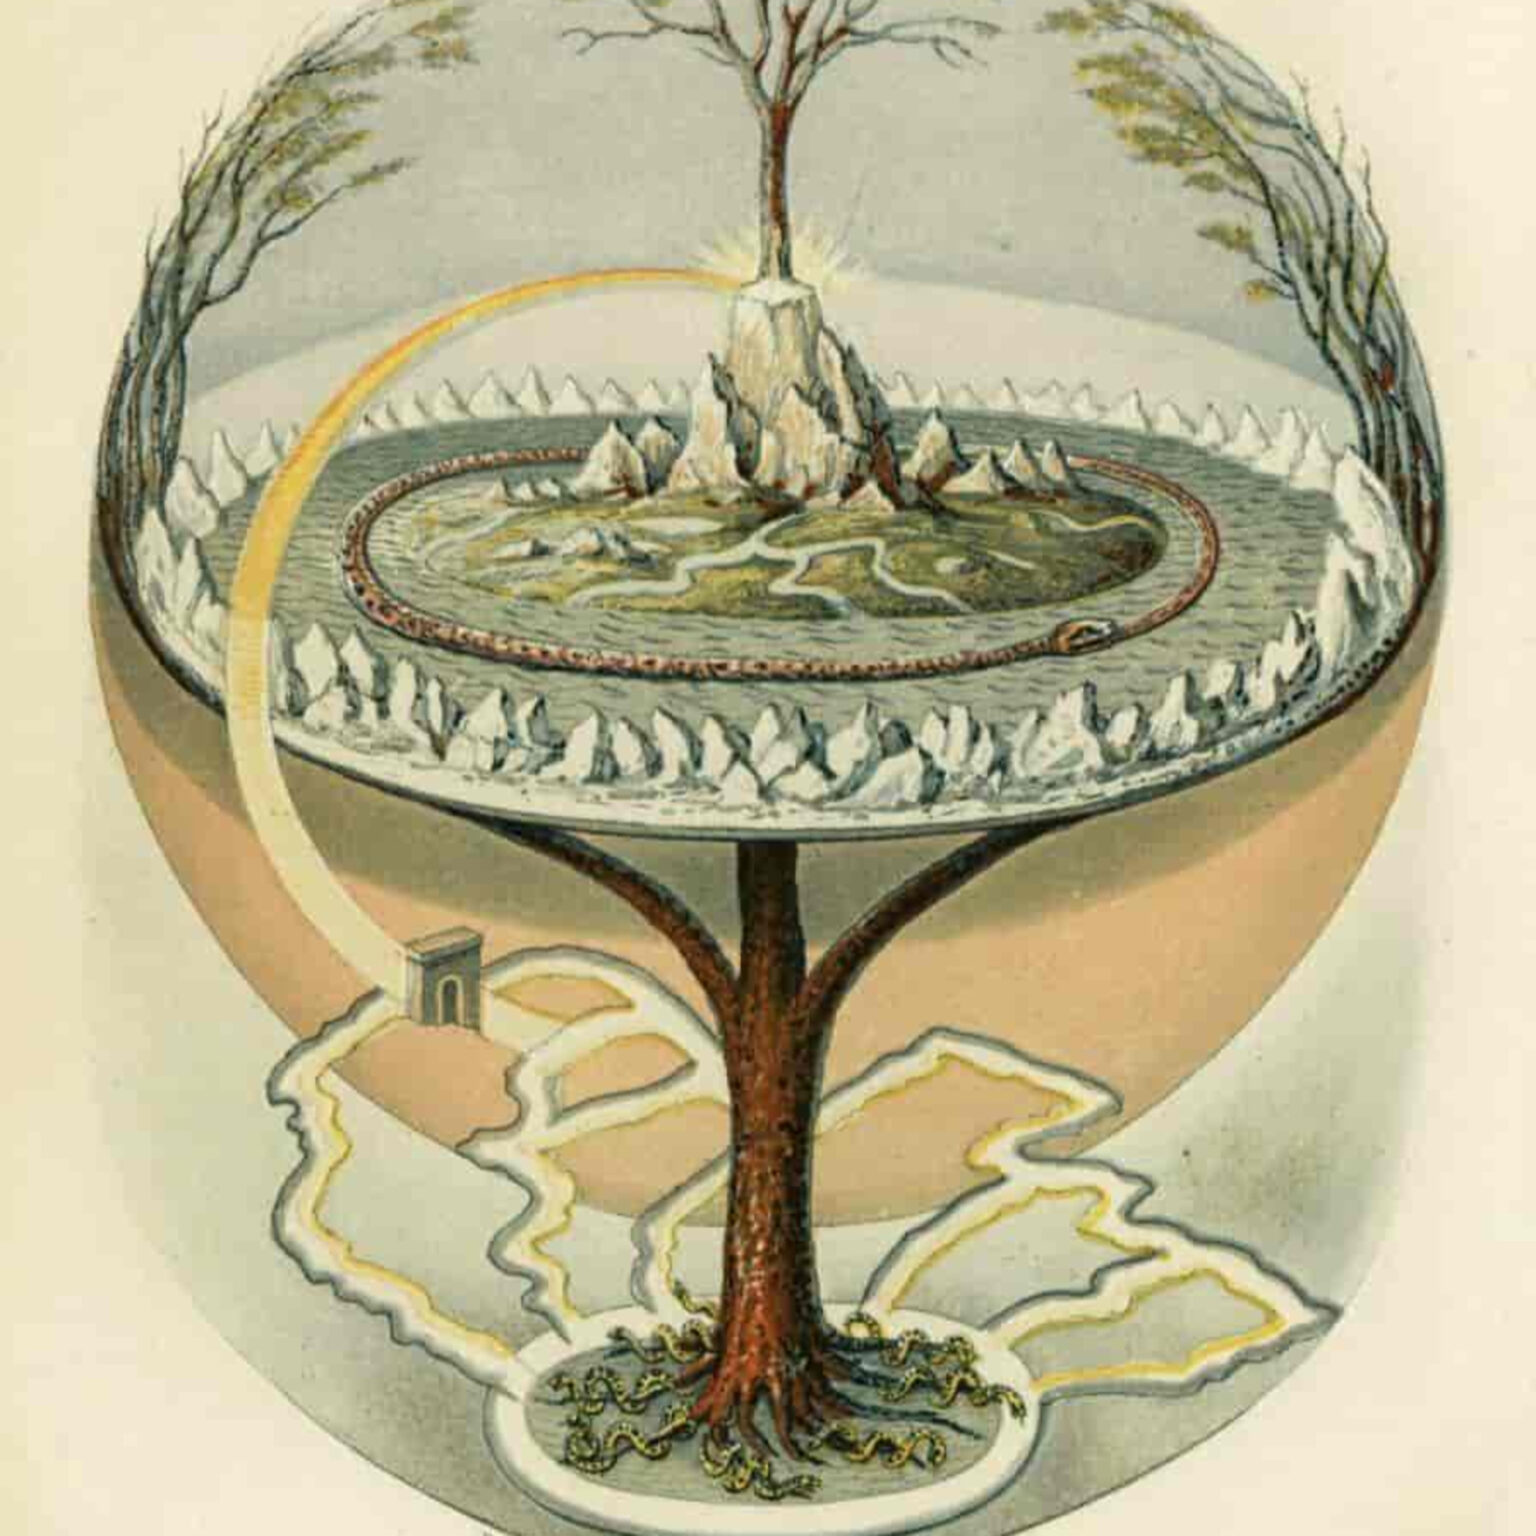 Скандинавская мифология дерево Иггдрасиль